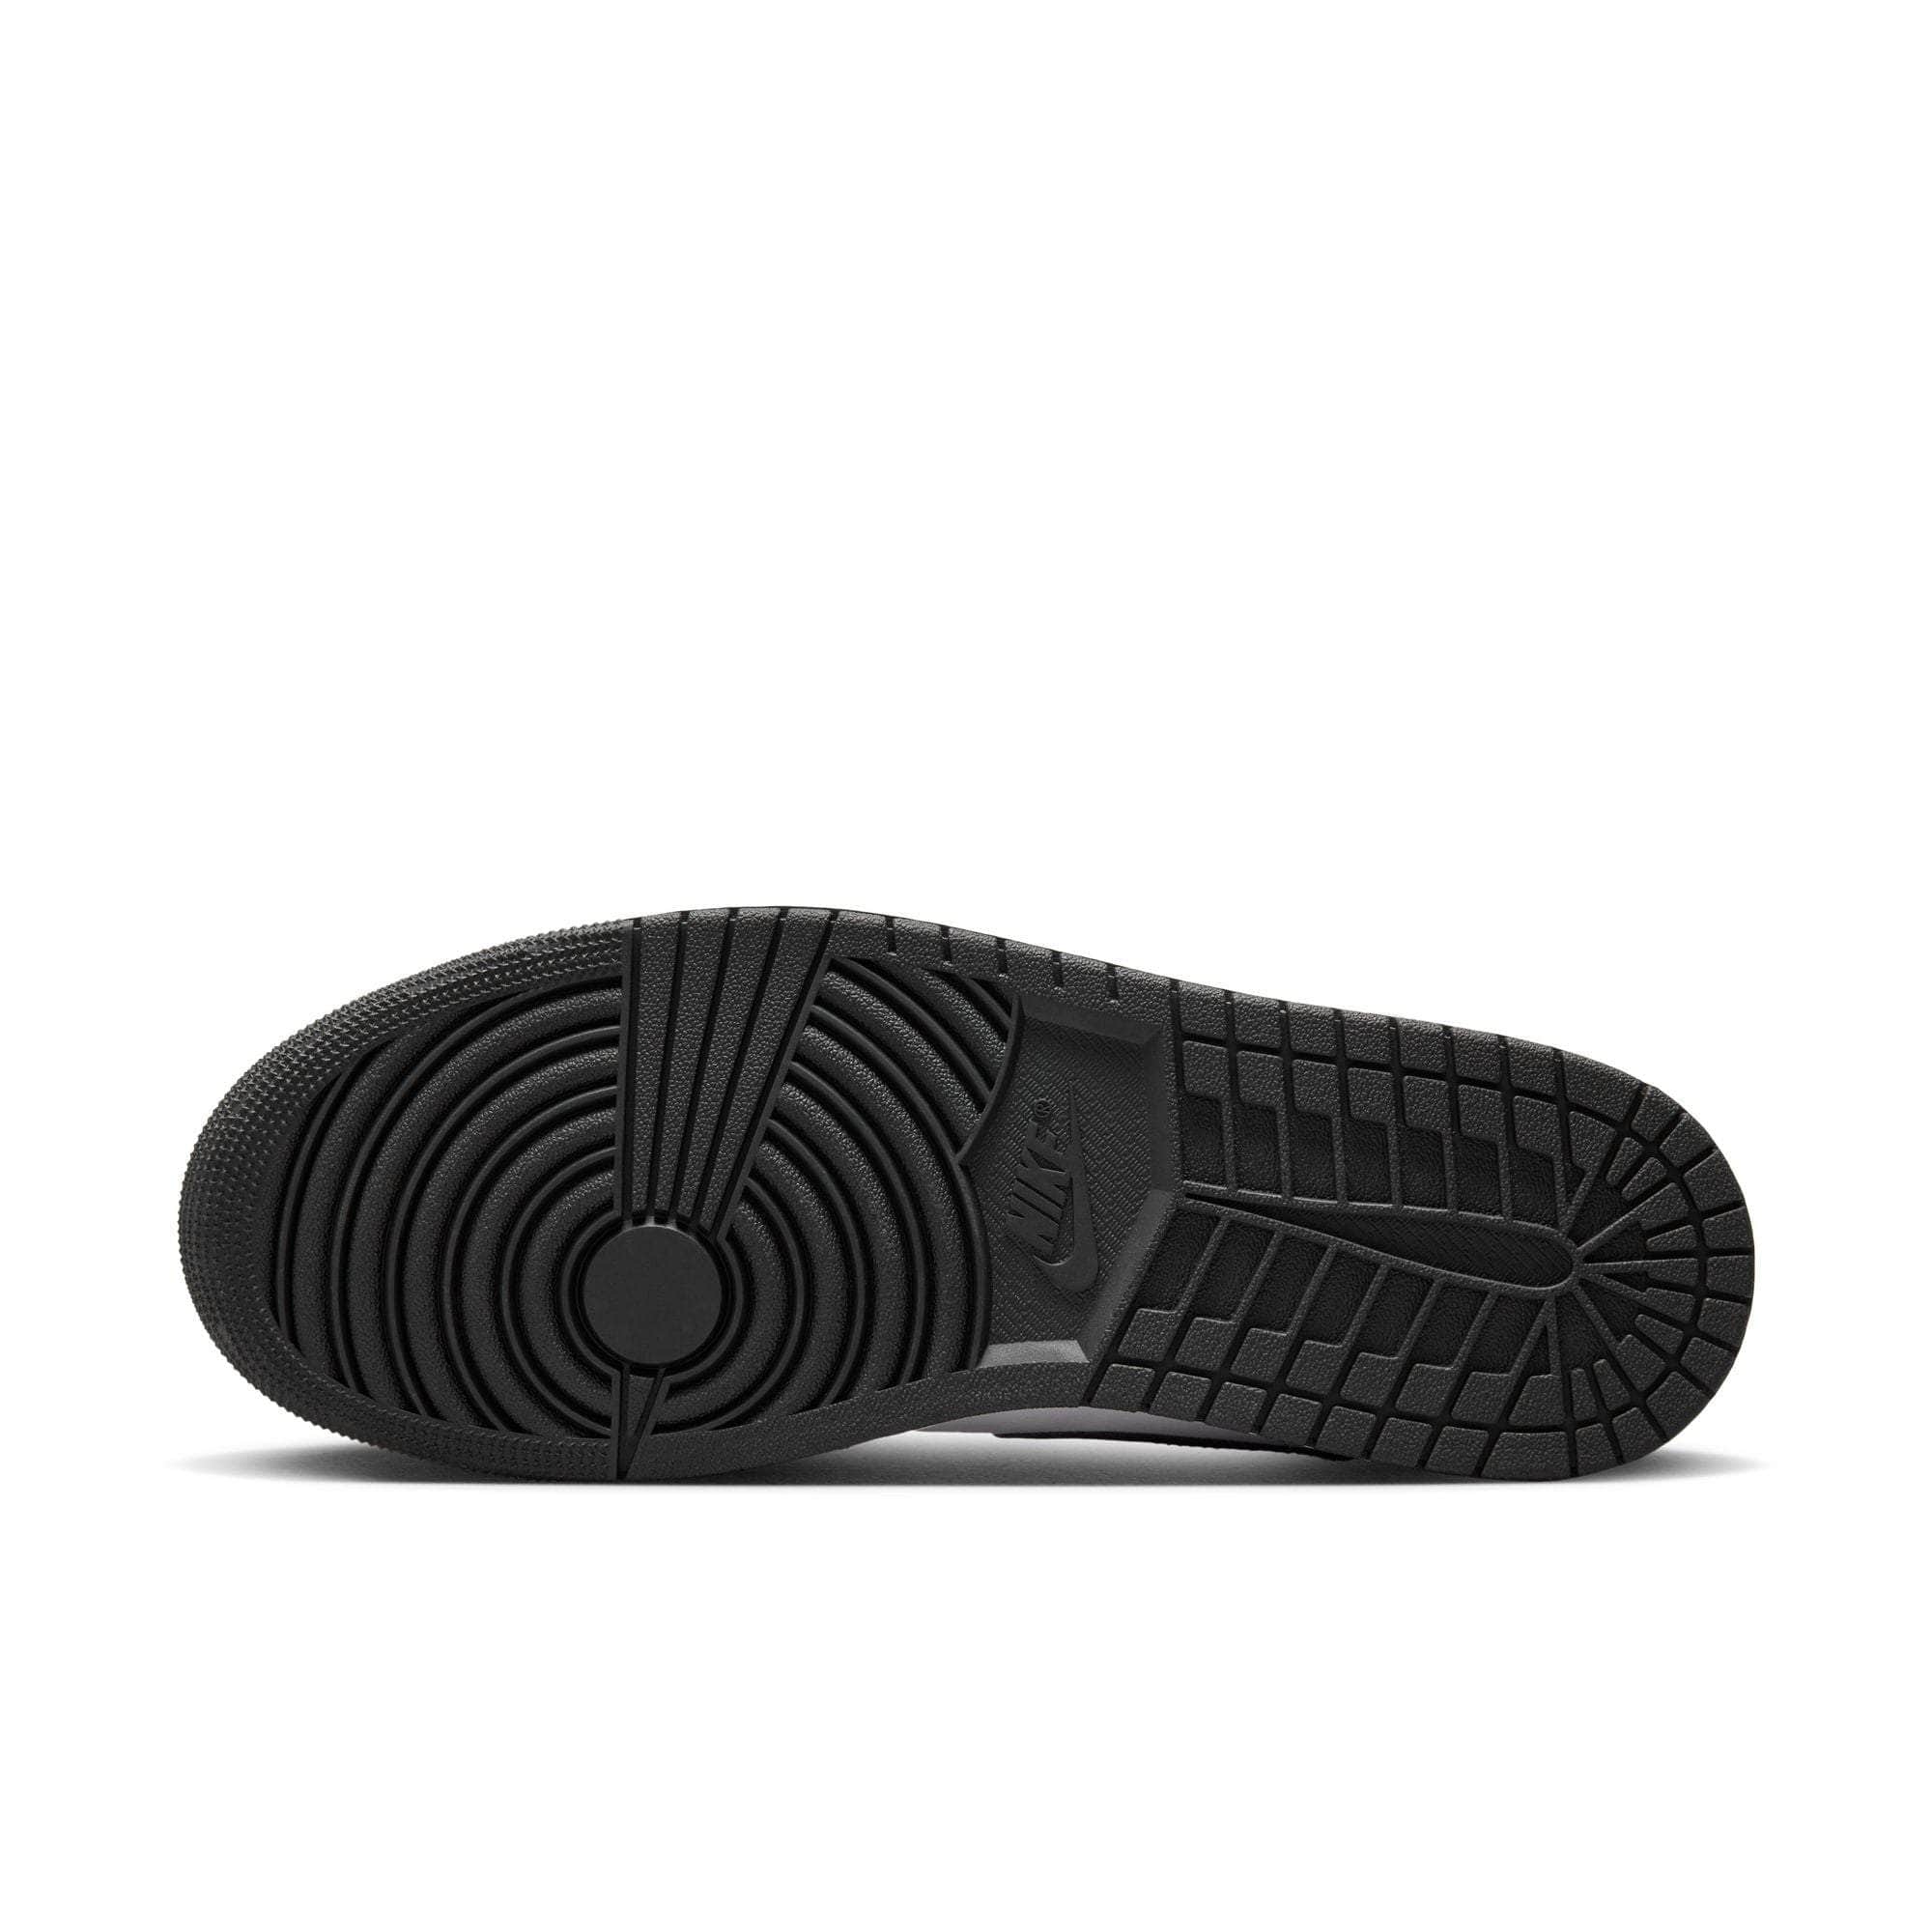 Air Jordan Footwear Air Jordan 1 Low "White Black" - Men's